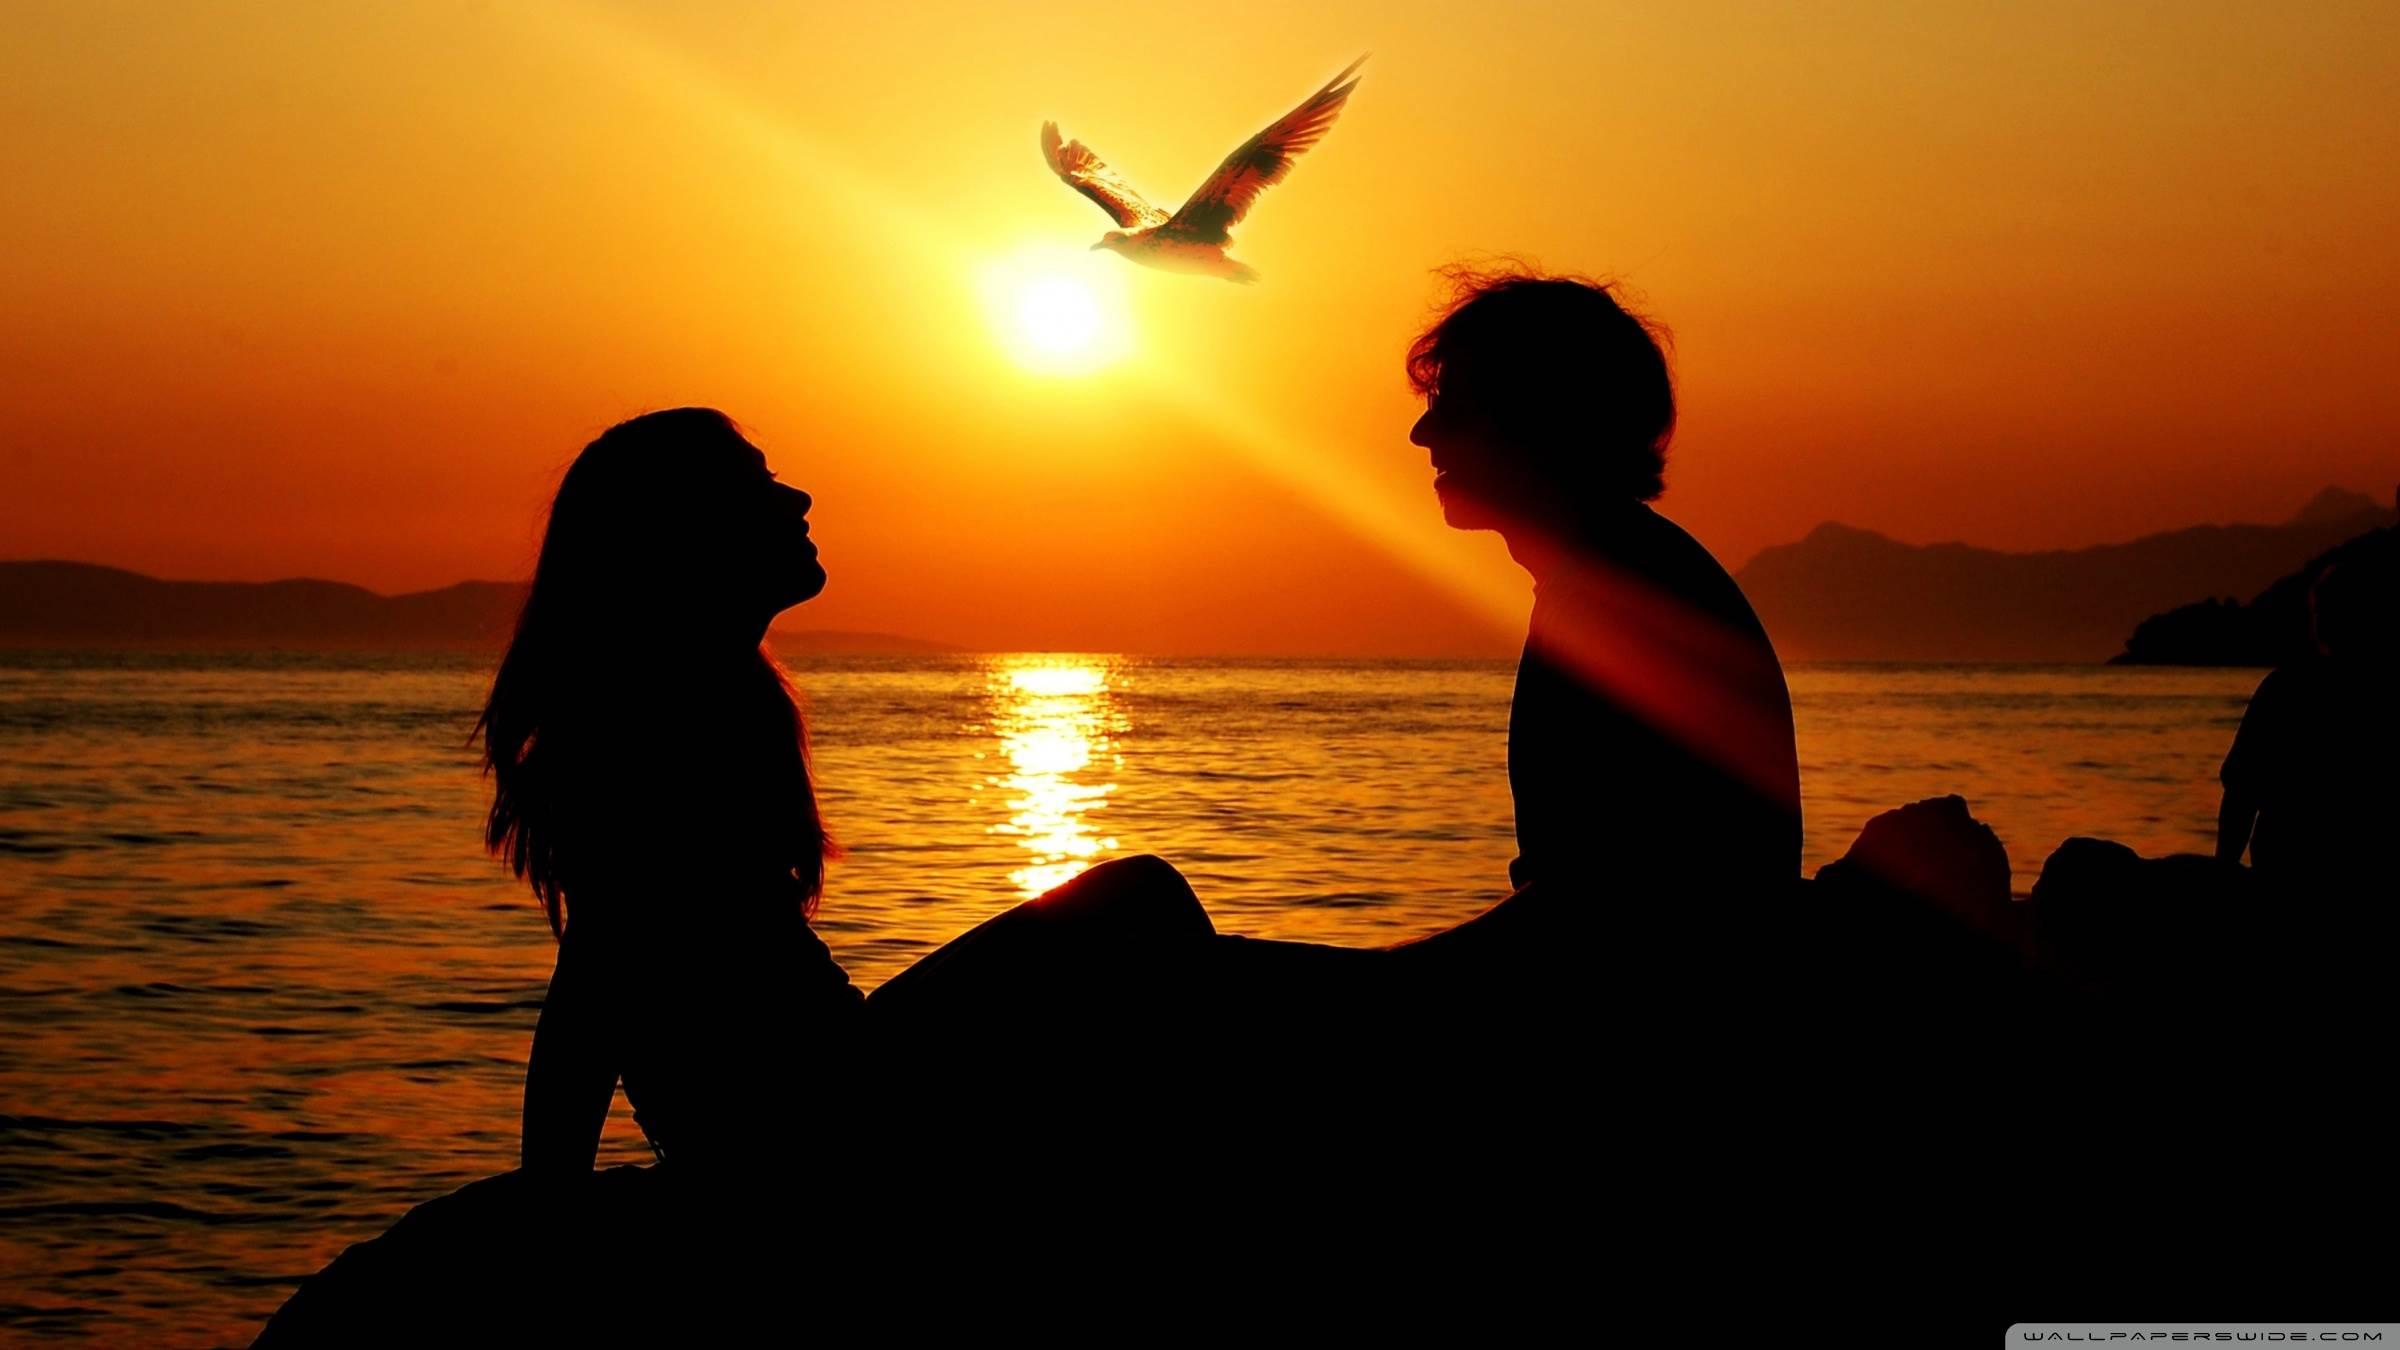 Romantic Couple Sunset HD desktop wallpaper, Widescreen, High